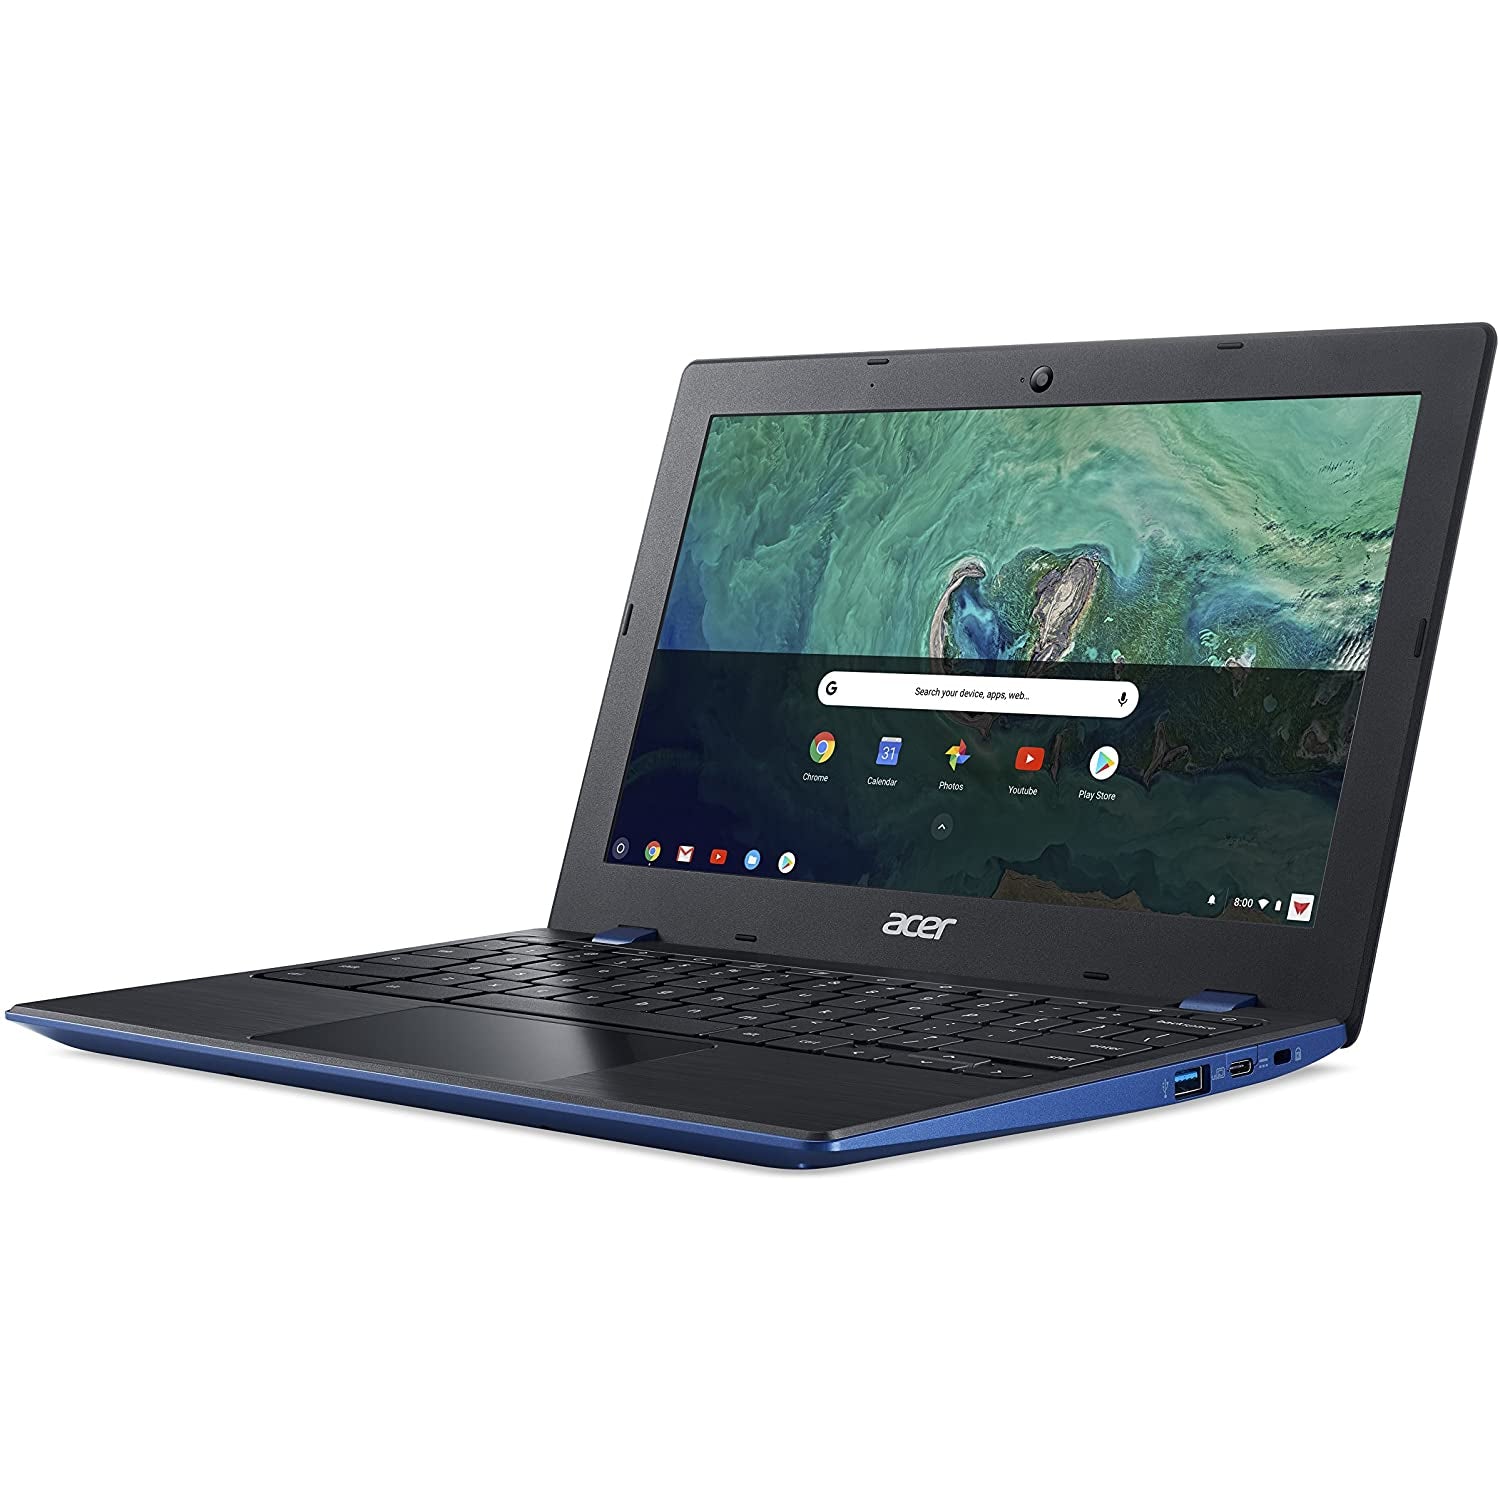 Acer Chromebook 11 CB311-8HT - Intel Celeron, 4GB RAM, 32GB HDD, 11.6" - Blue